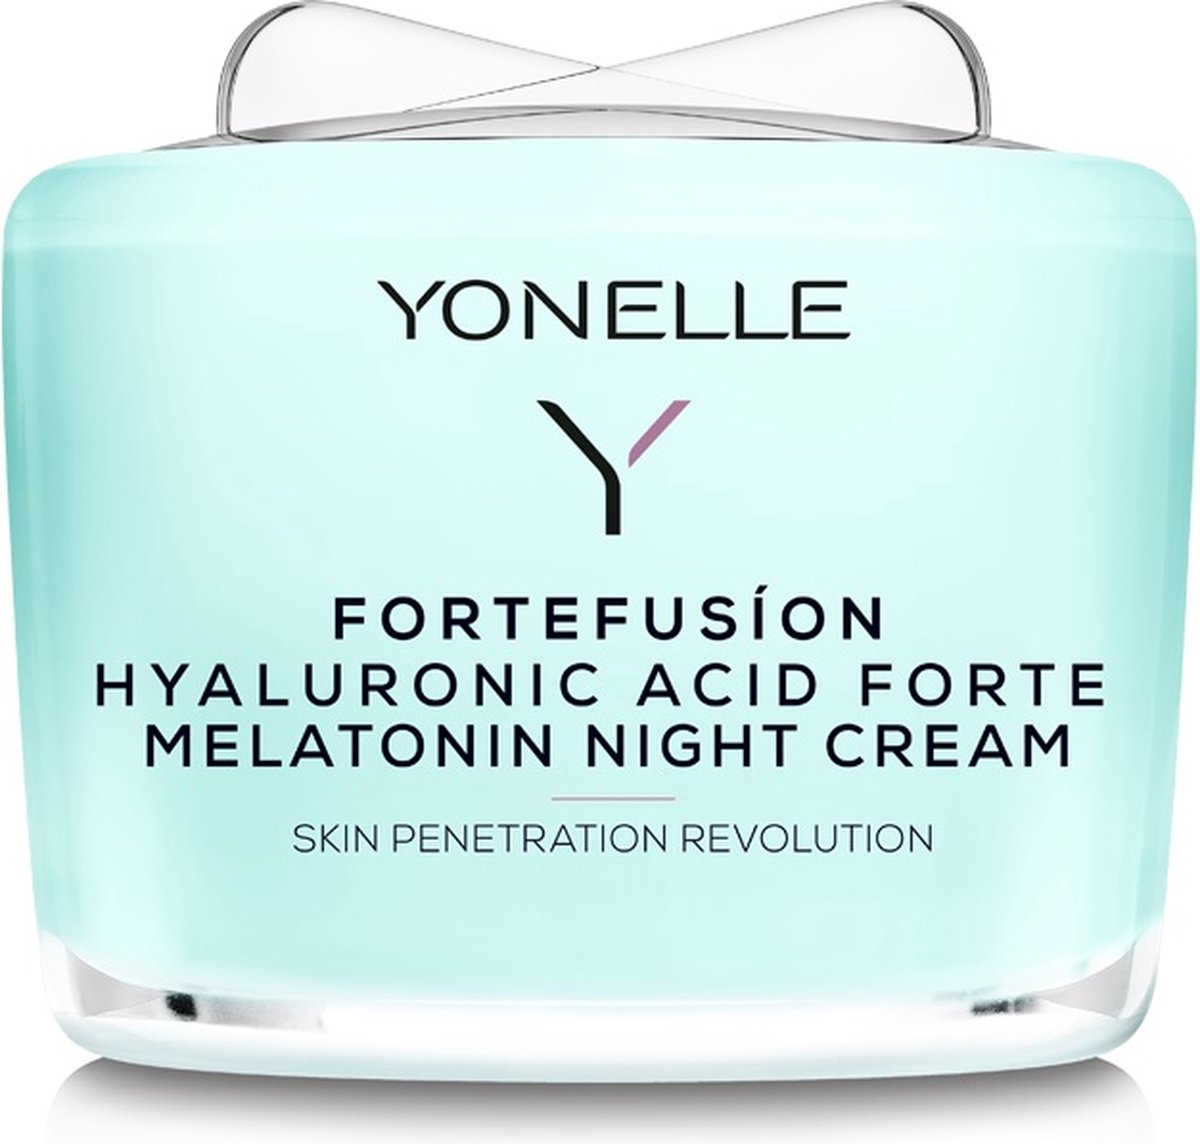 Fortefusion Hyaluronzuur Forte Melatonine Nachtcrème 55ml